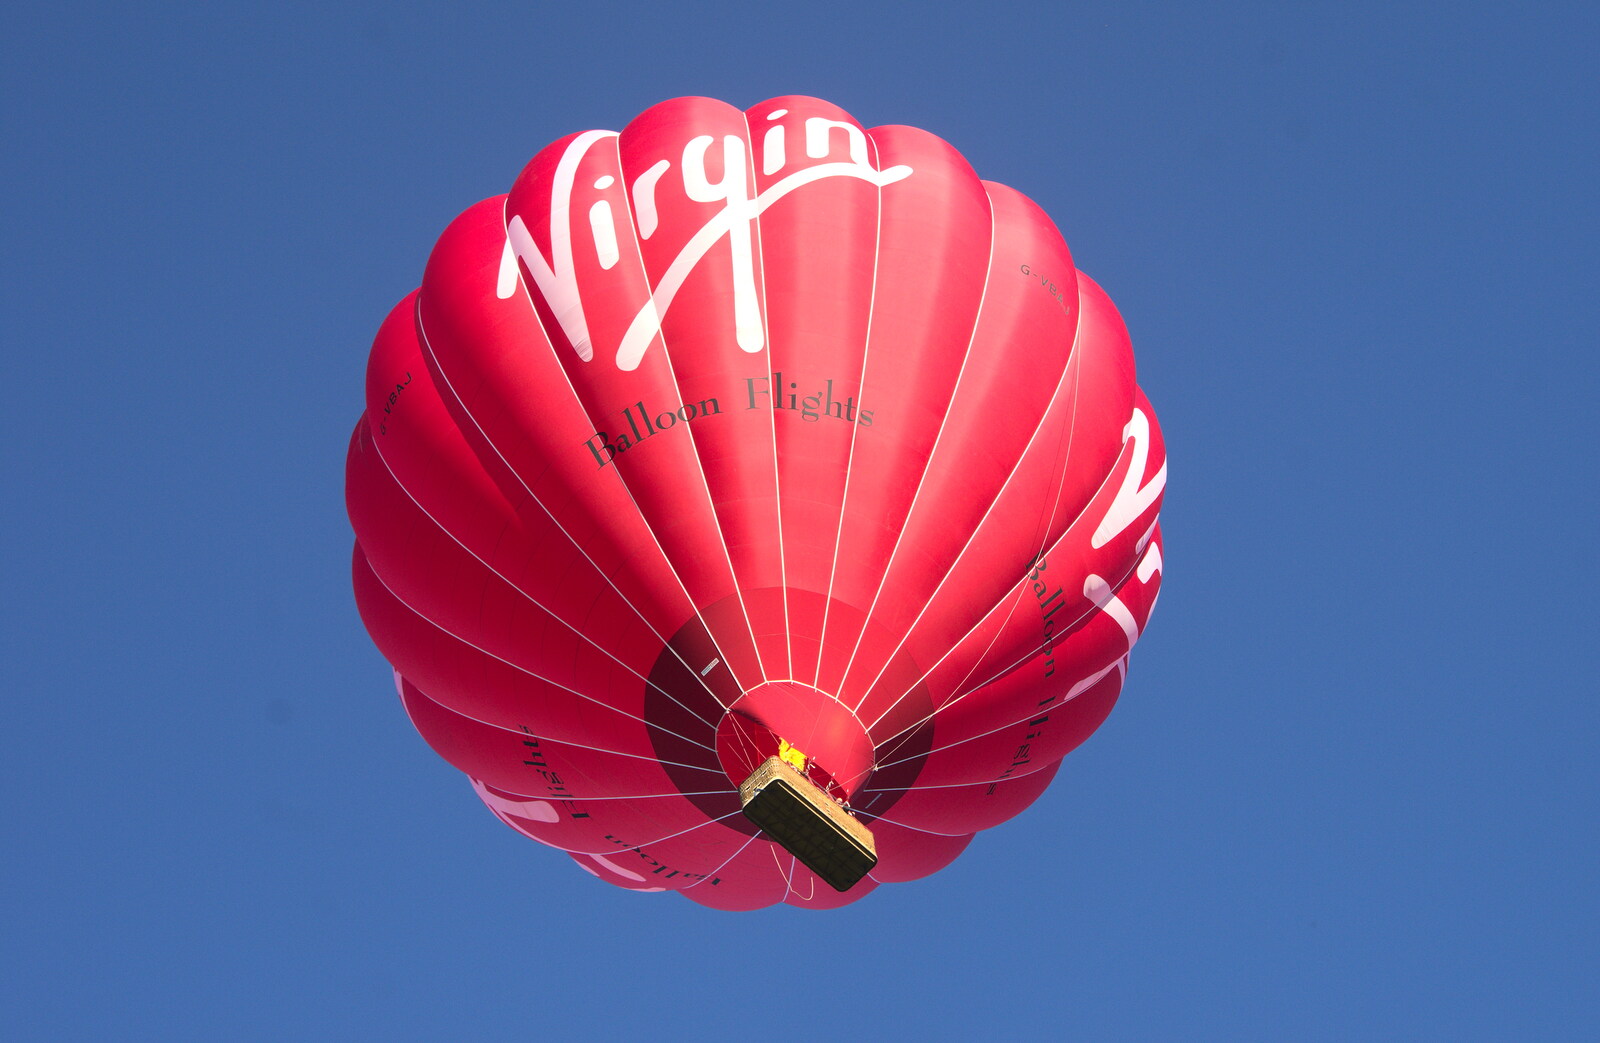 The Virgin balloon in flight from A 1940s Dance, Bressingham Steam Museum, Bressingham, Norfolk - 19th September 2015